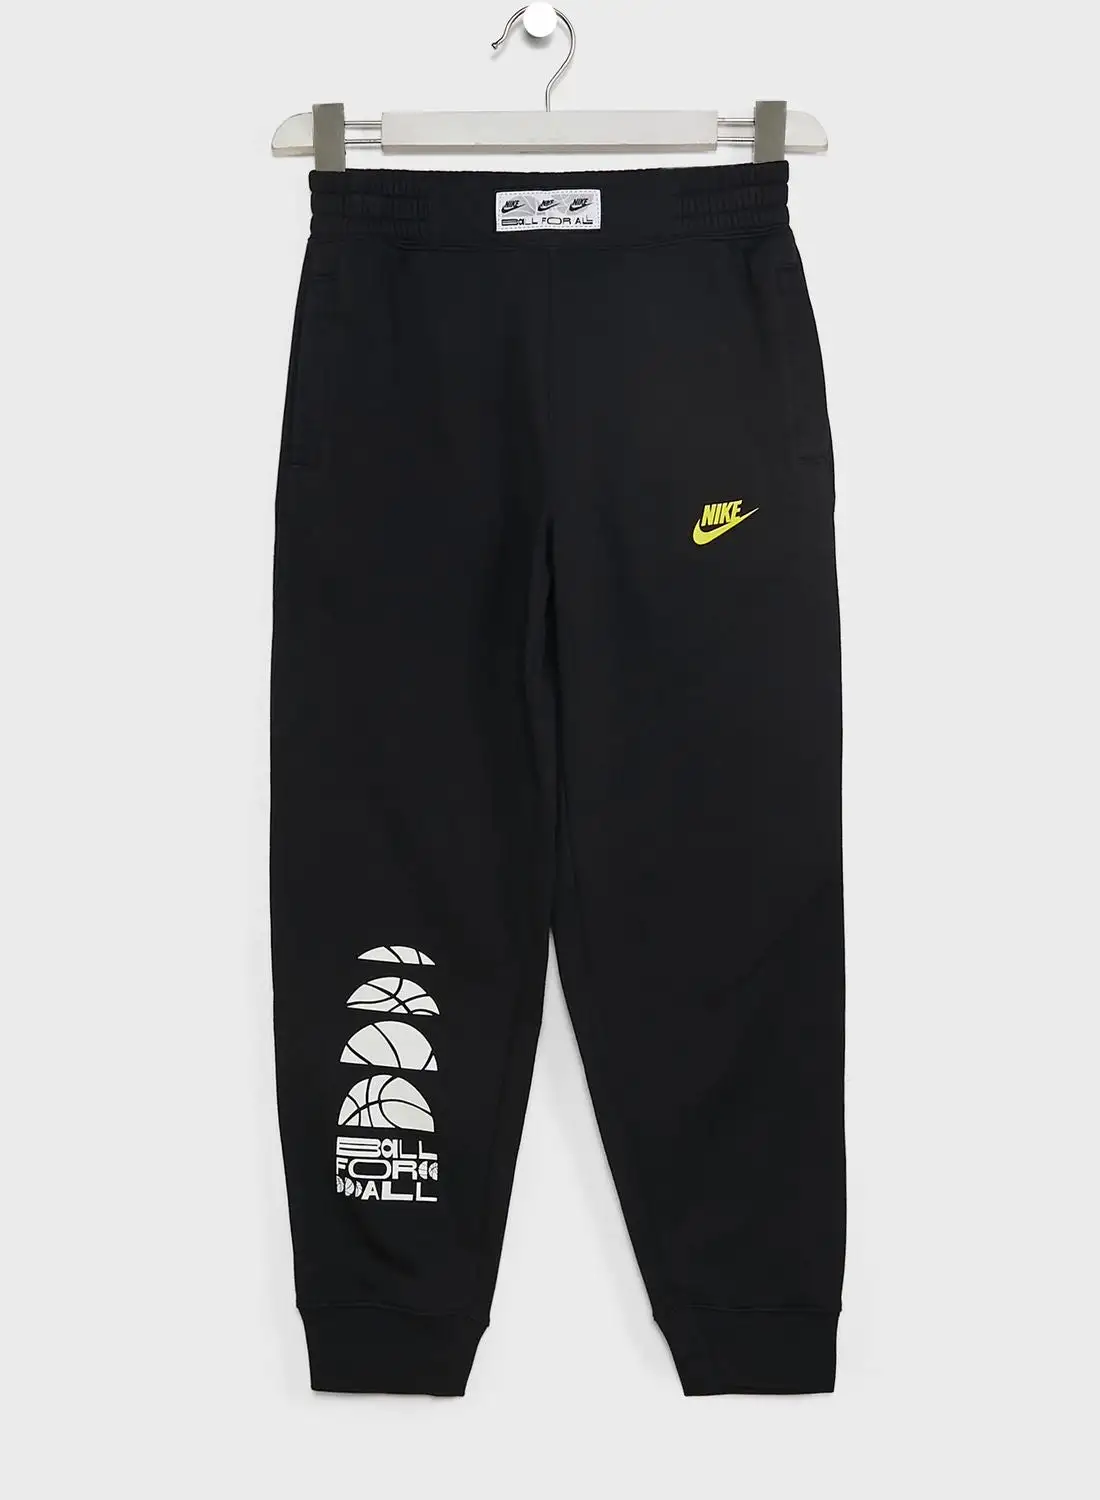 Nike Youth C.O.B Fleece Sweatpants